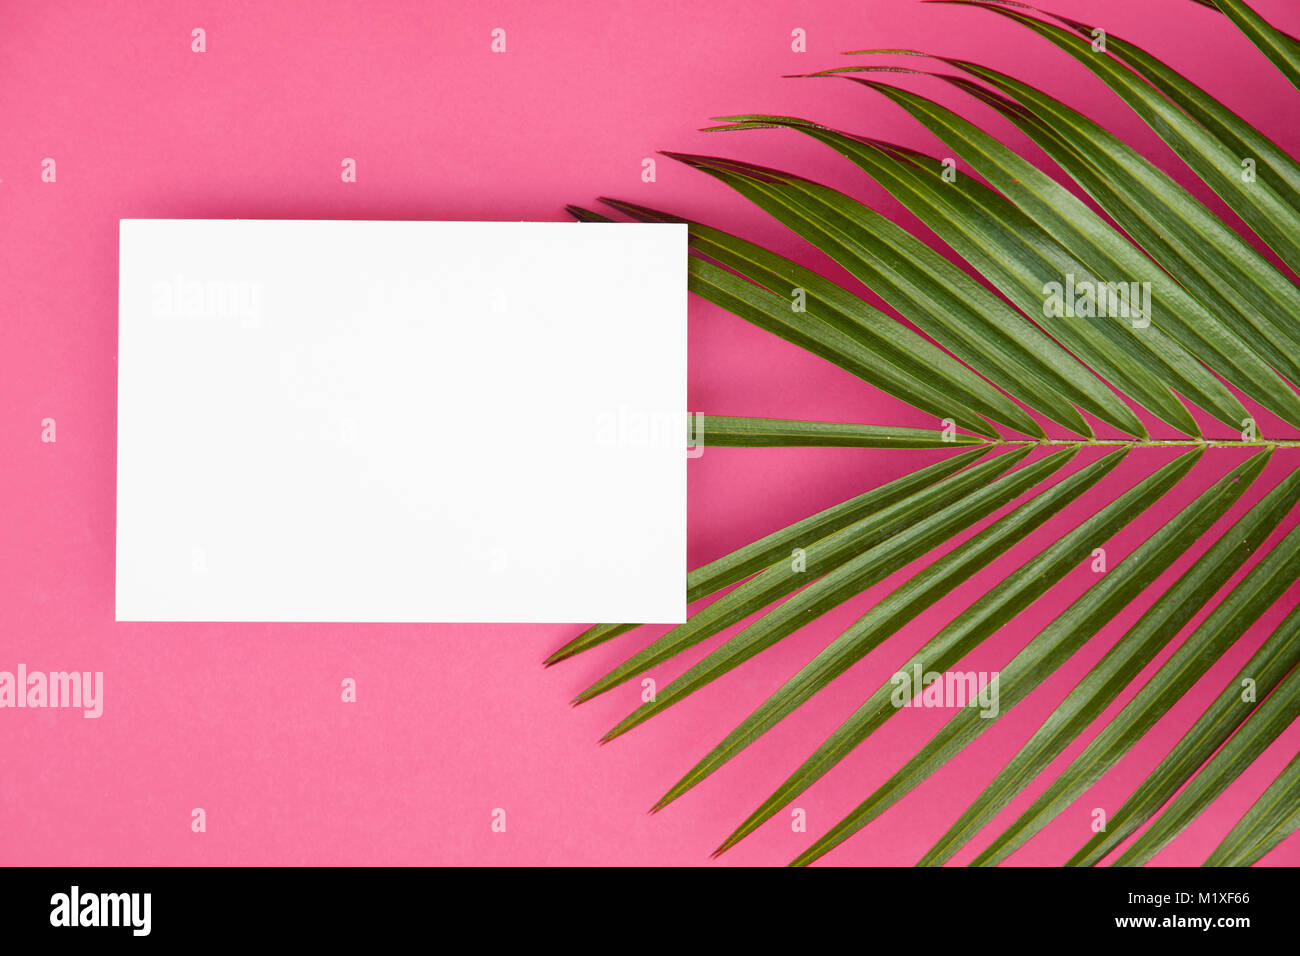 Tropische Palme Blatt auf einem hellen rosa Hintergrund mit Kopie spcae Stockfoto